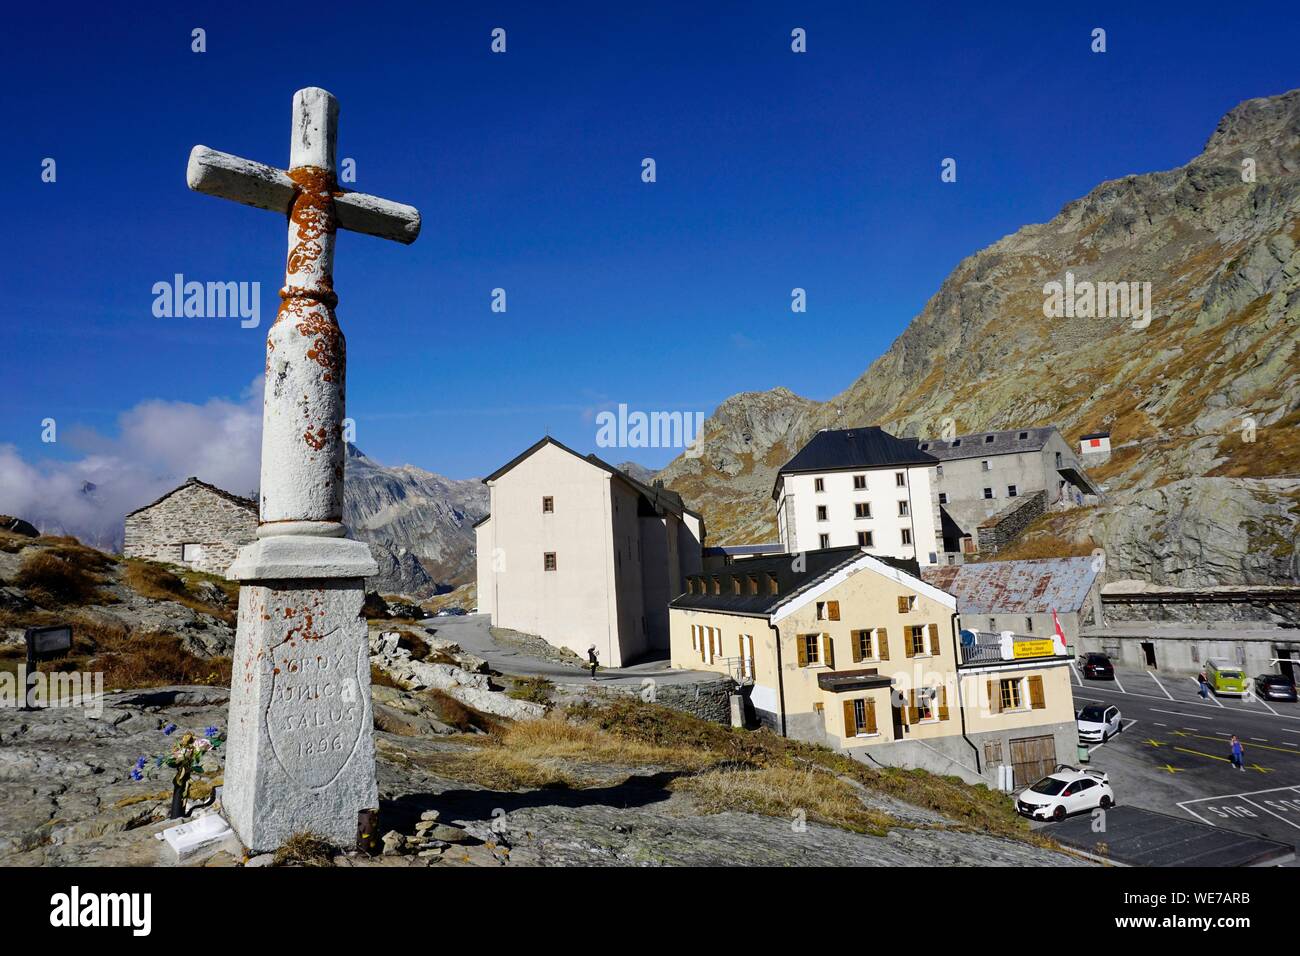 La Svizzera e il Cantone del Vallese, Col du Grand San Bernardo, Gran San Bernardo ospizio Foto Stock